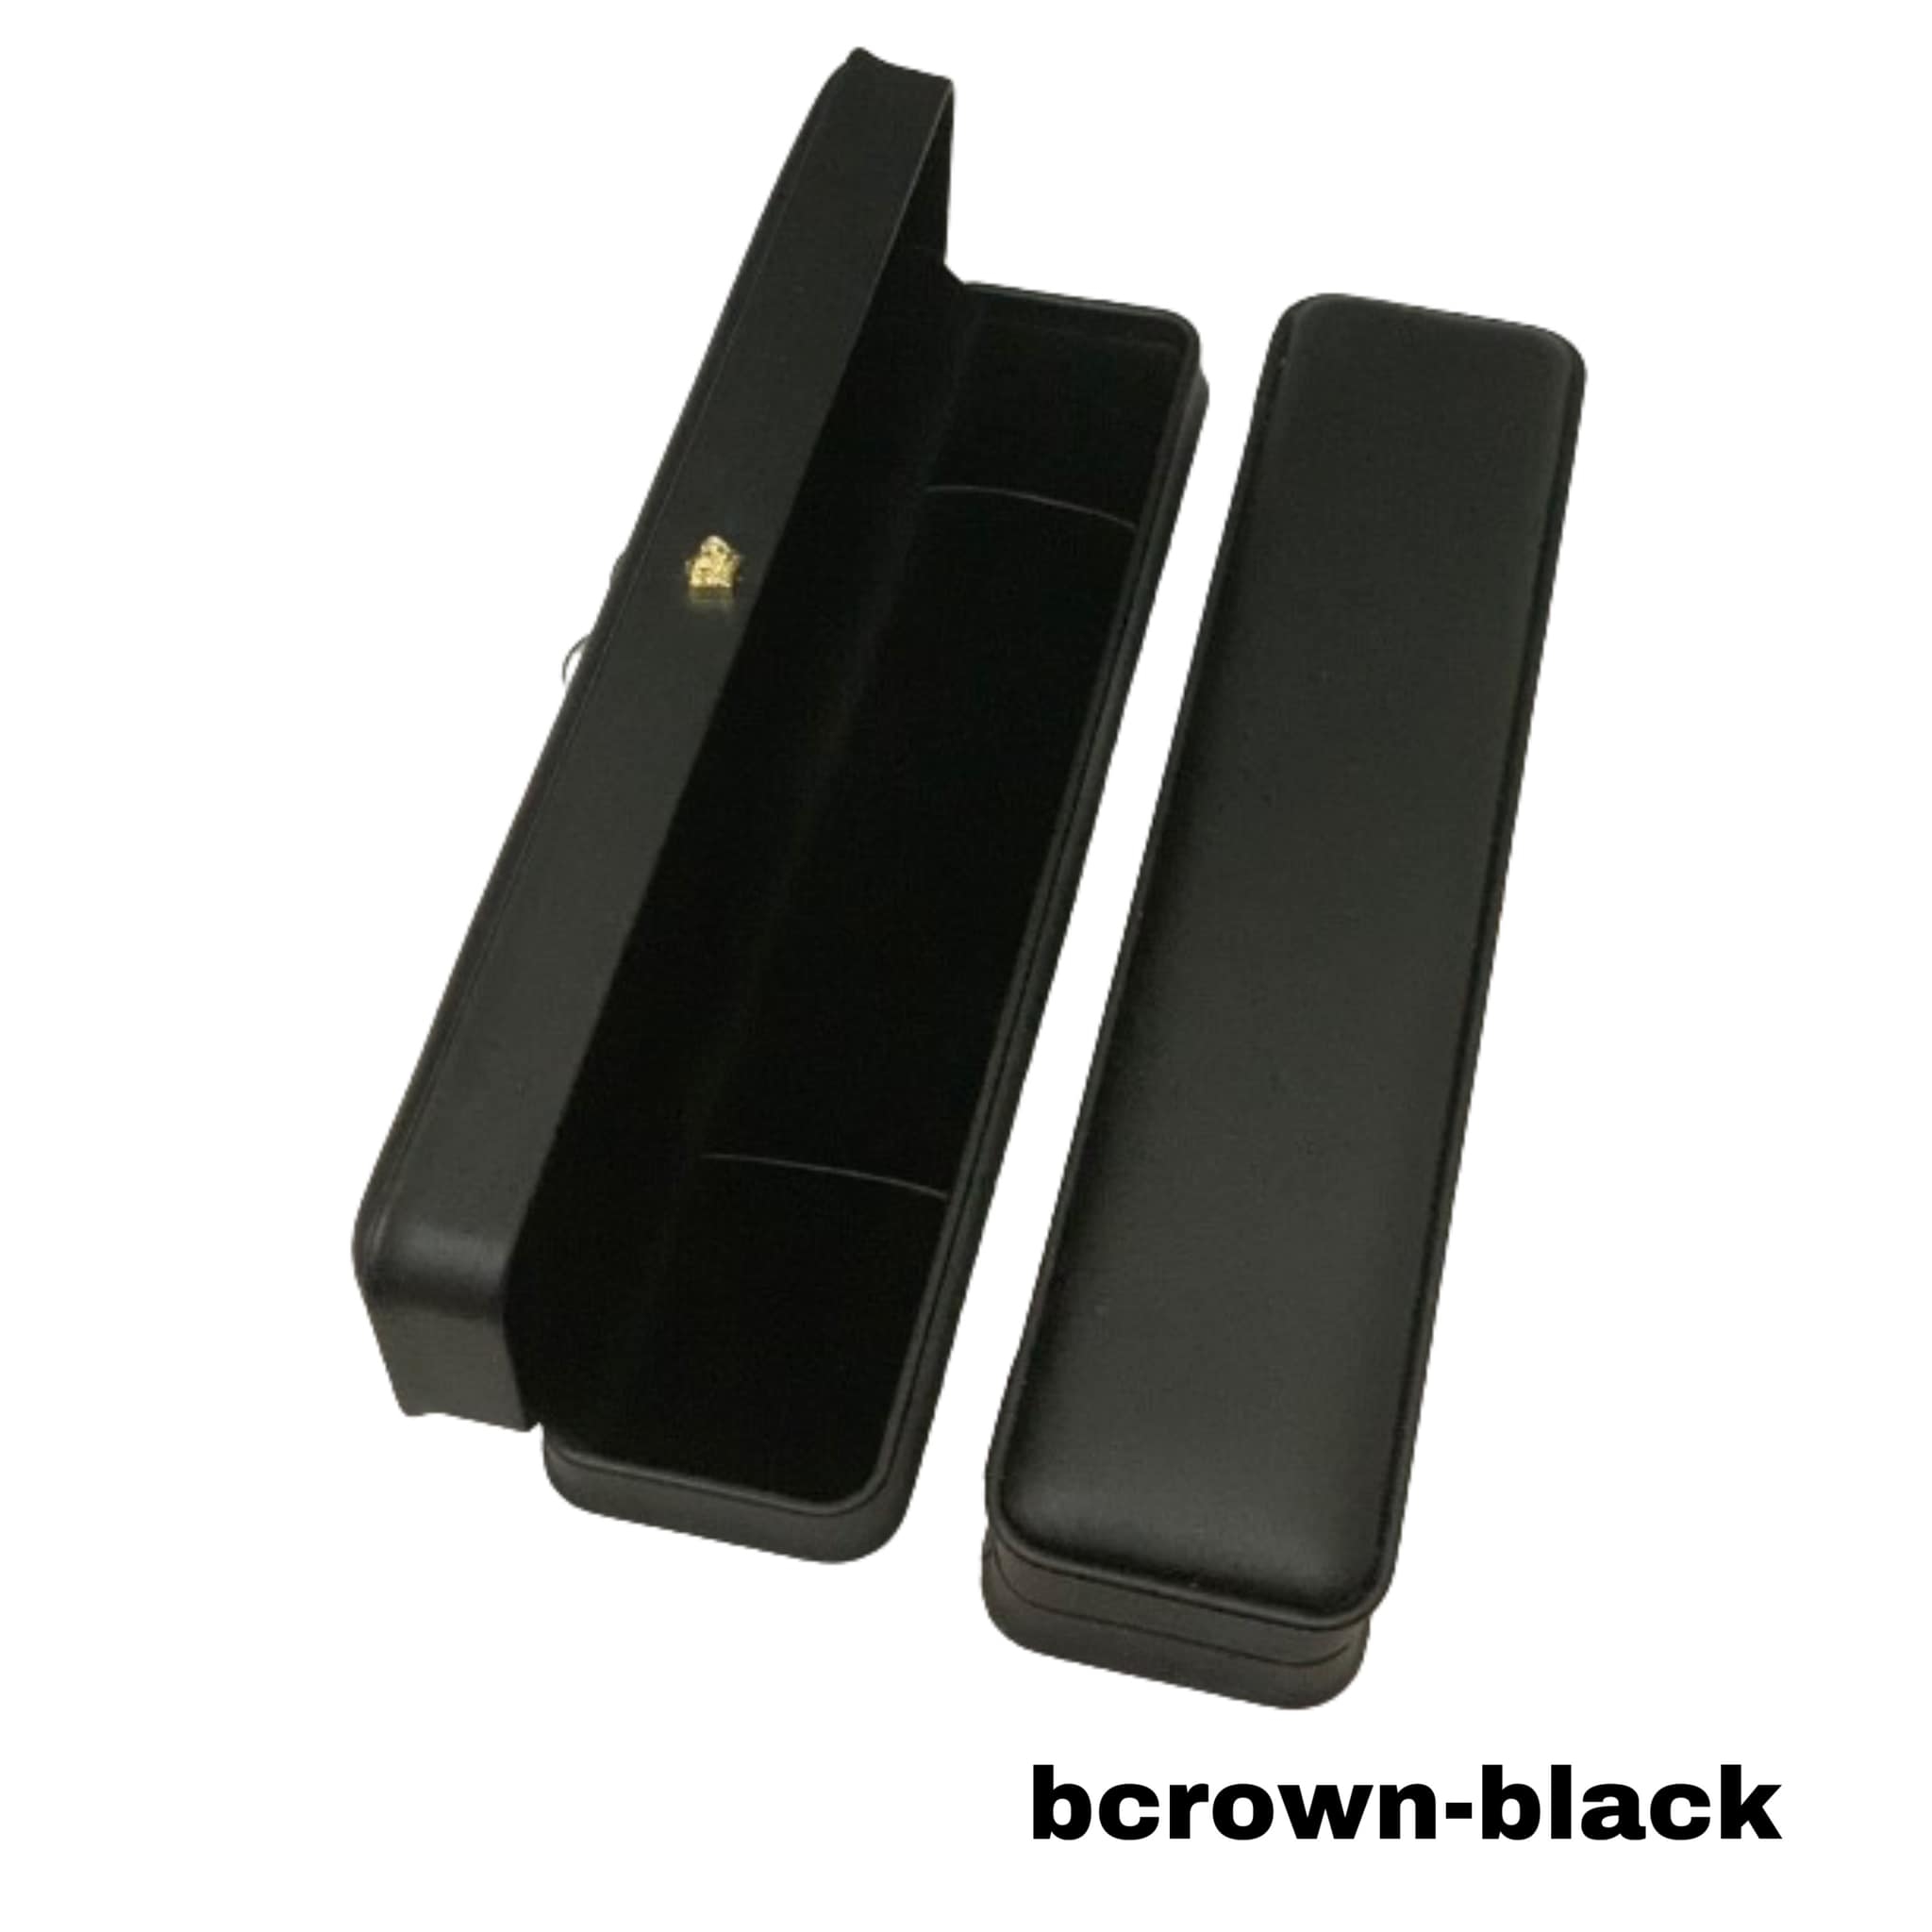 bcrown-black